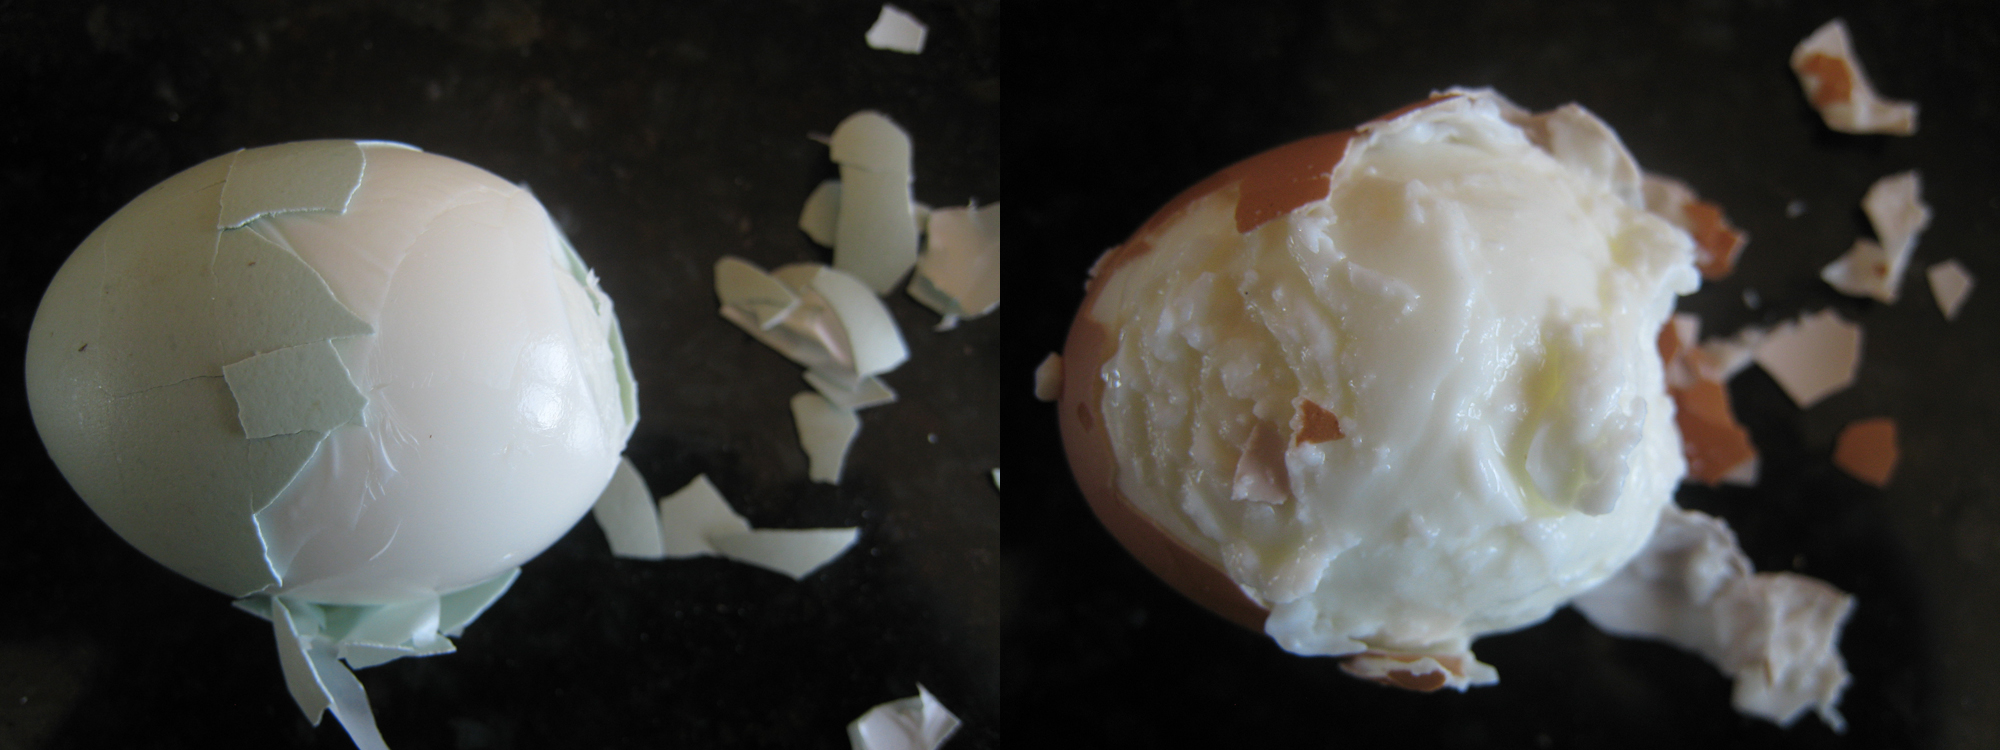 boiled egg results based on freshness of egg